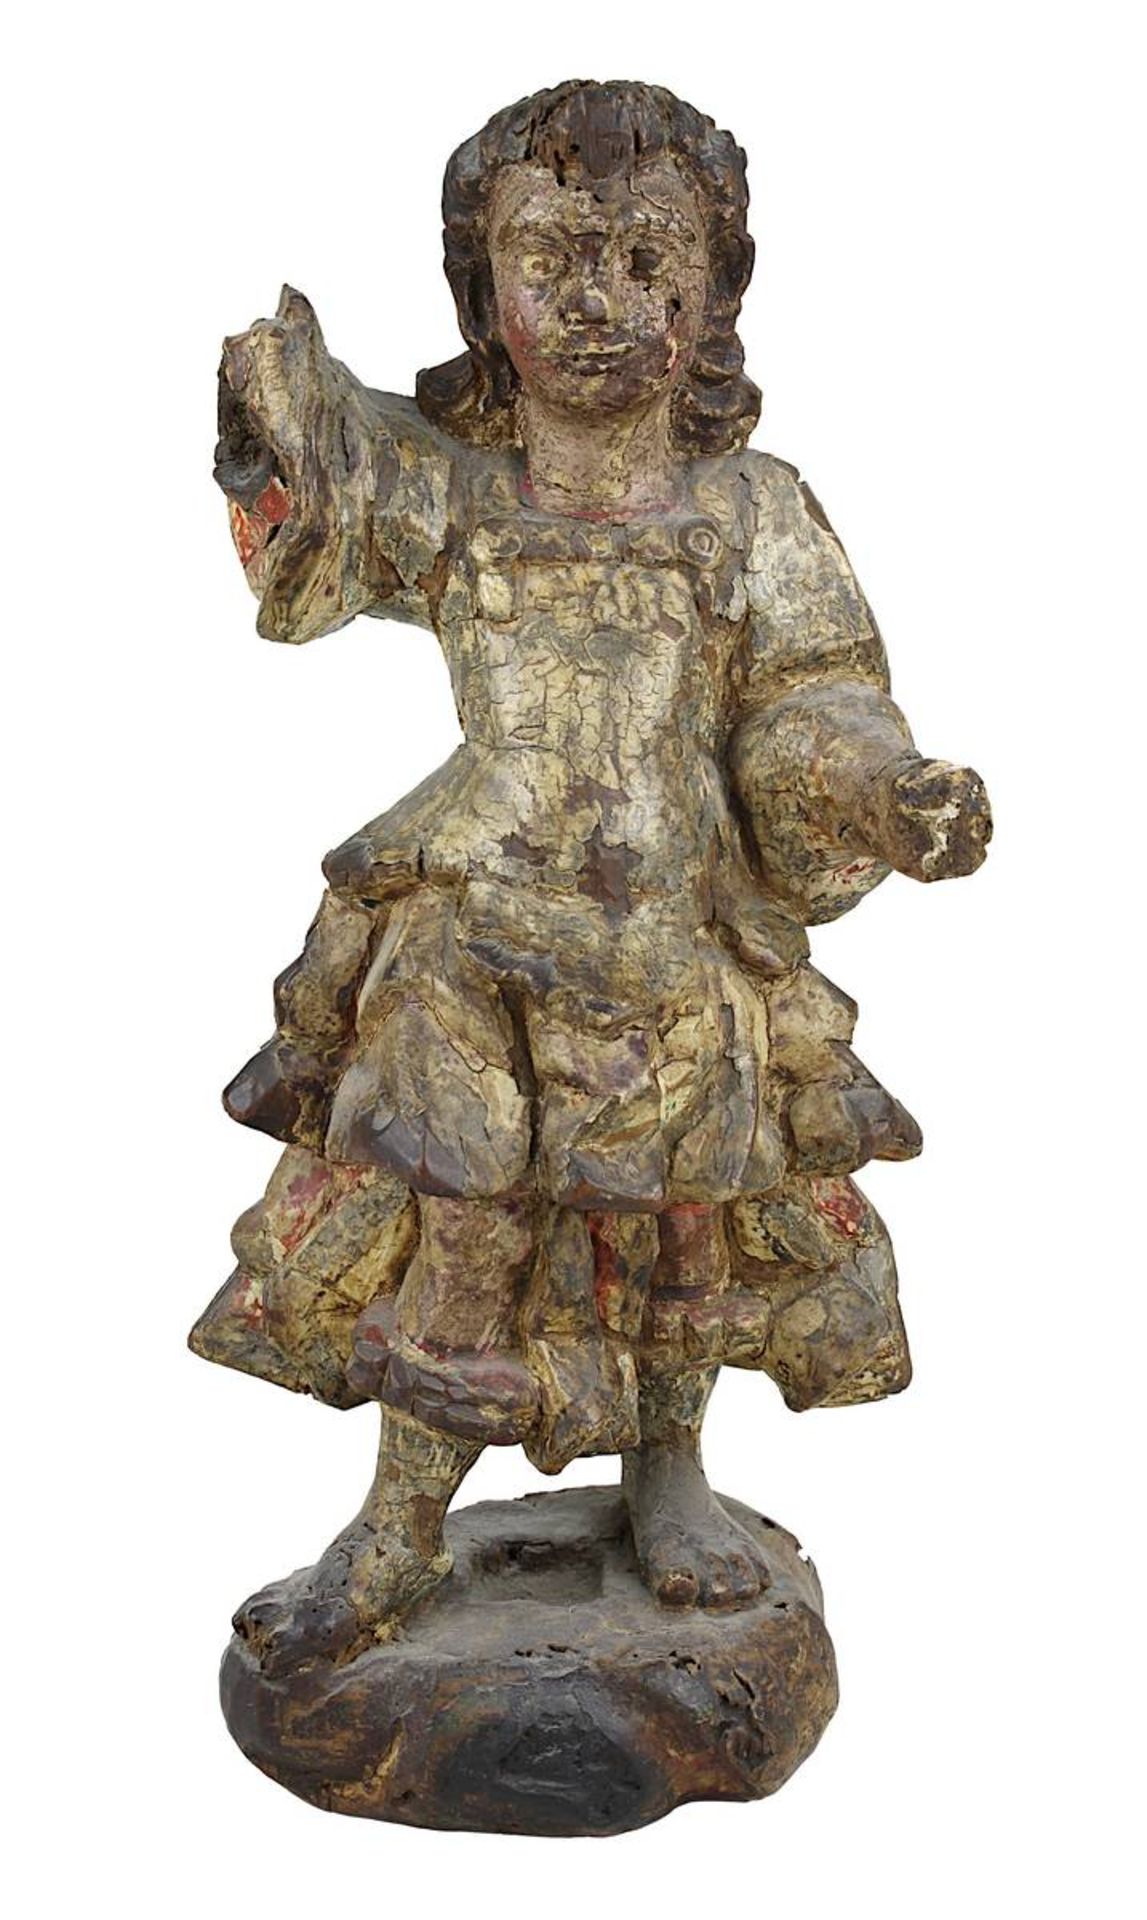 Engelsfigur aus Holz, kolonialspanisch 18. Jh., Holz geschnitzt und mit Resten der farbigen Fassung,